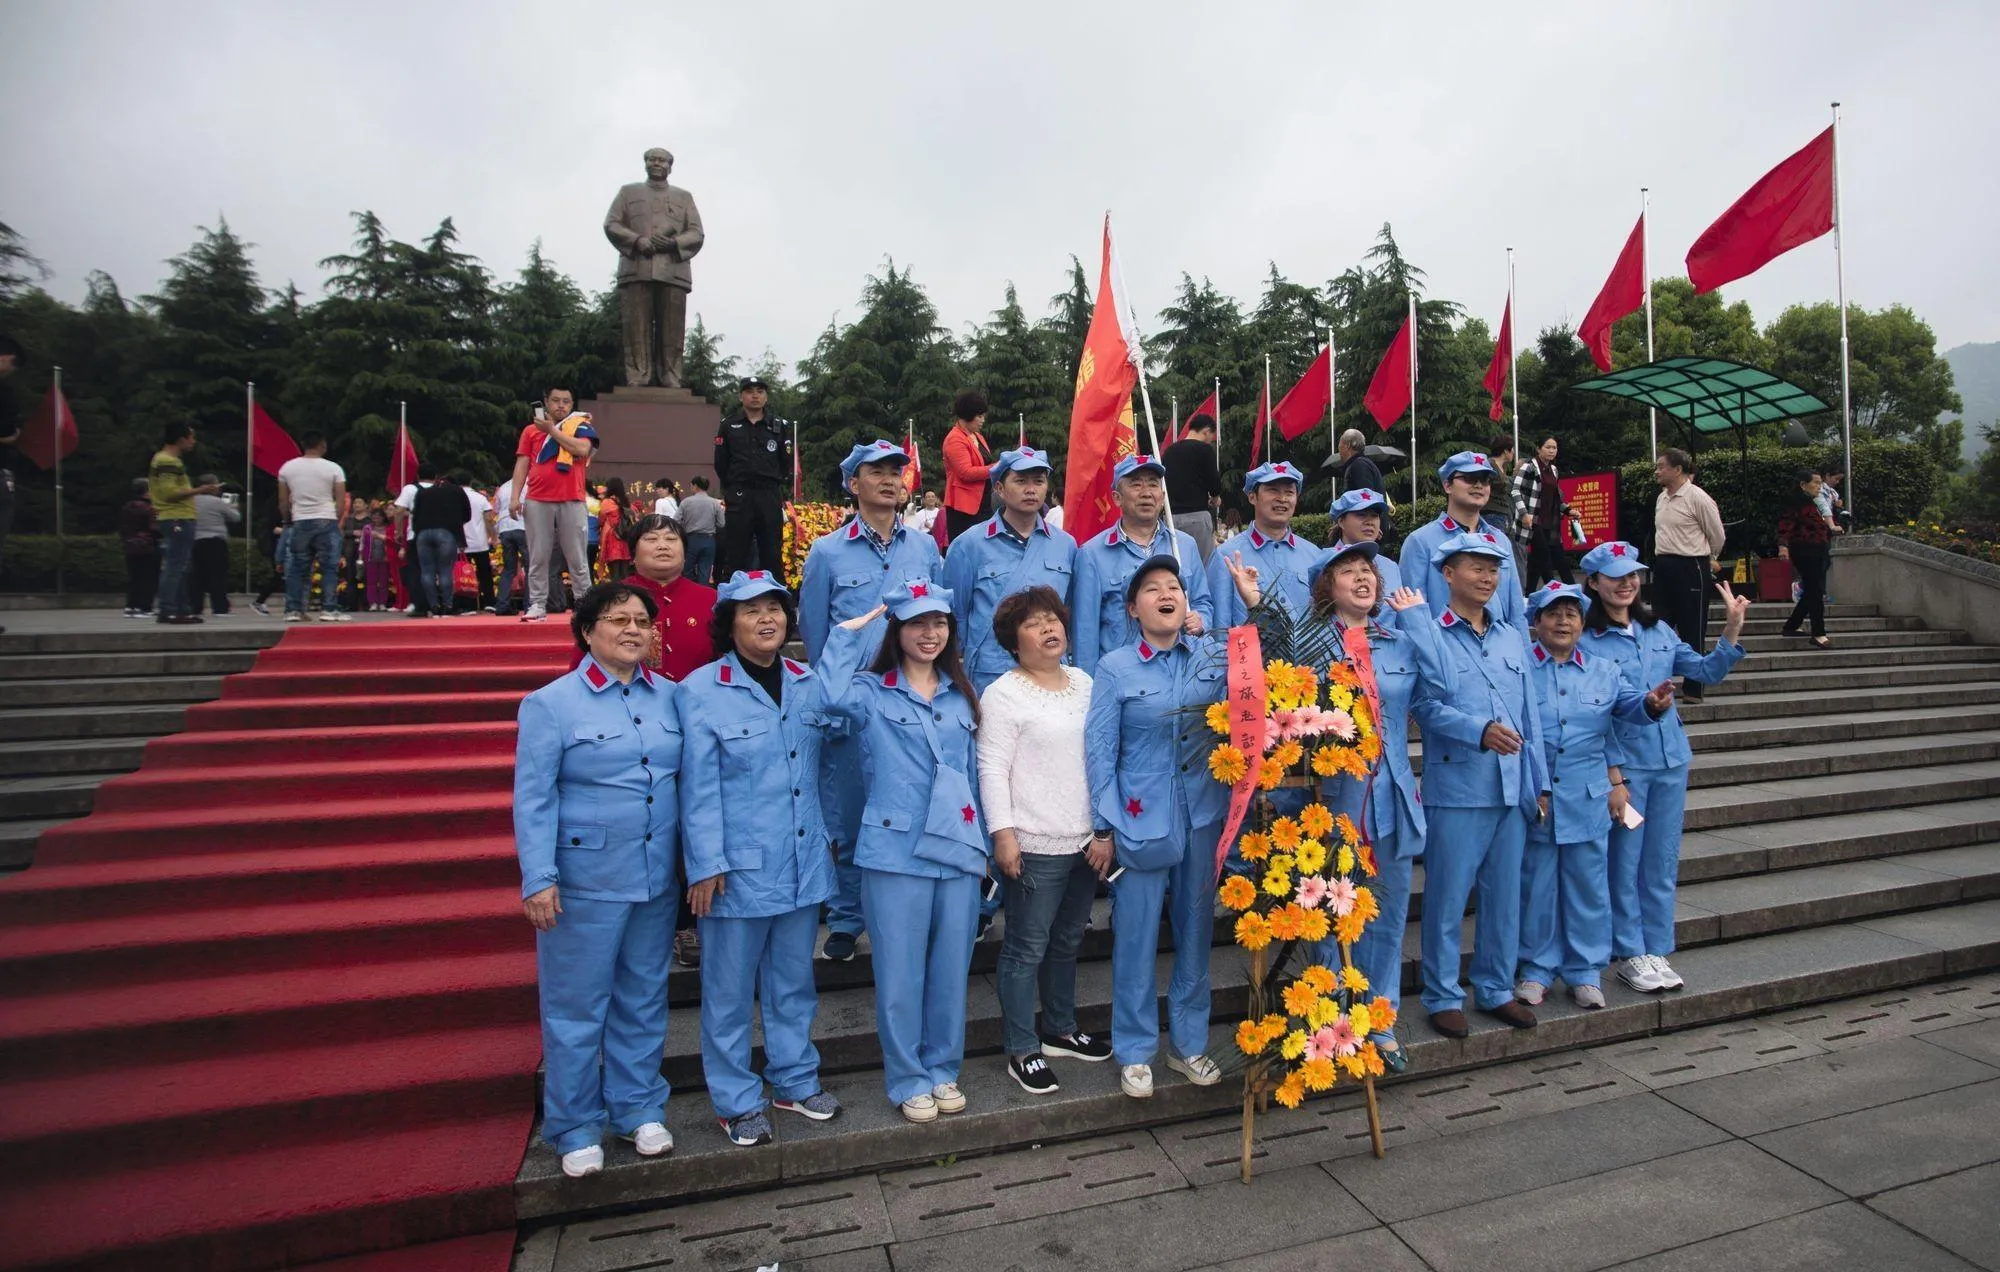 Le « tourisme rouge », une réinterprétation de l'histoire du maoïsme